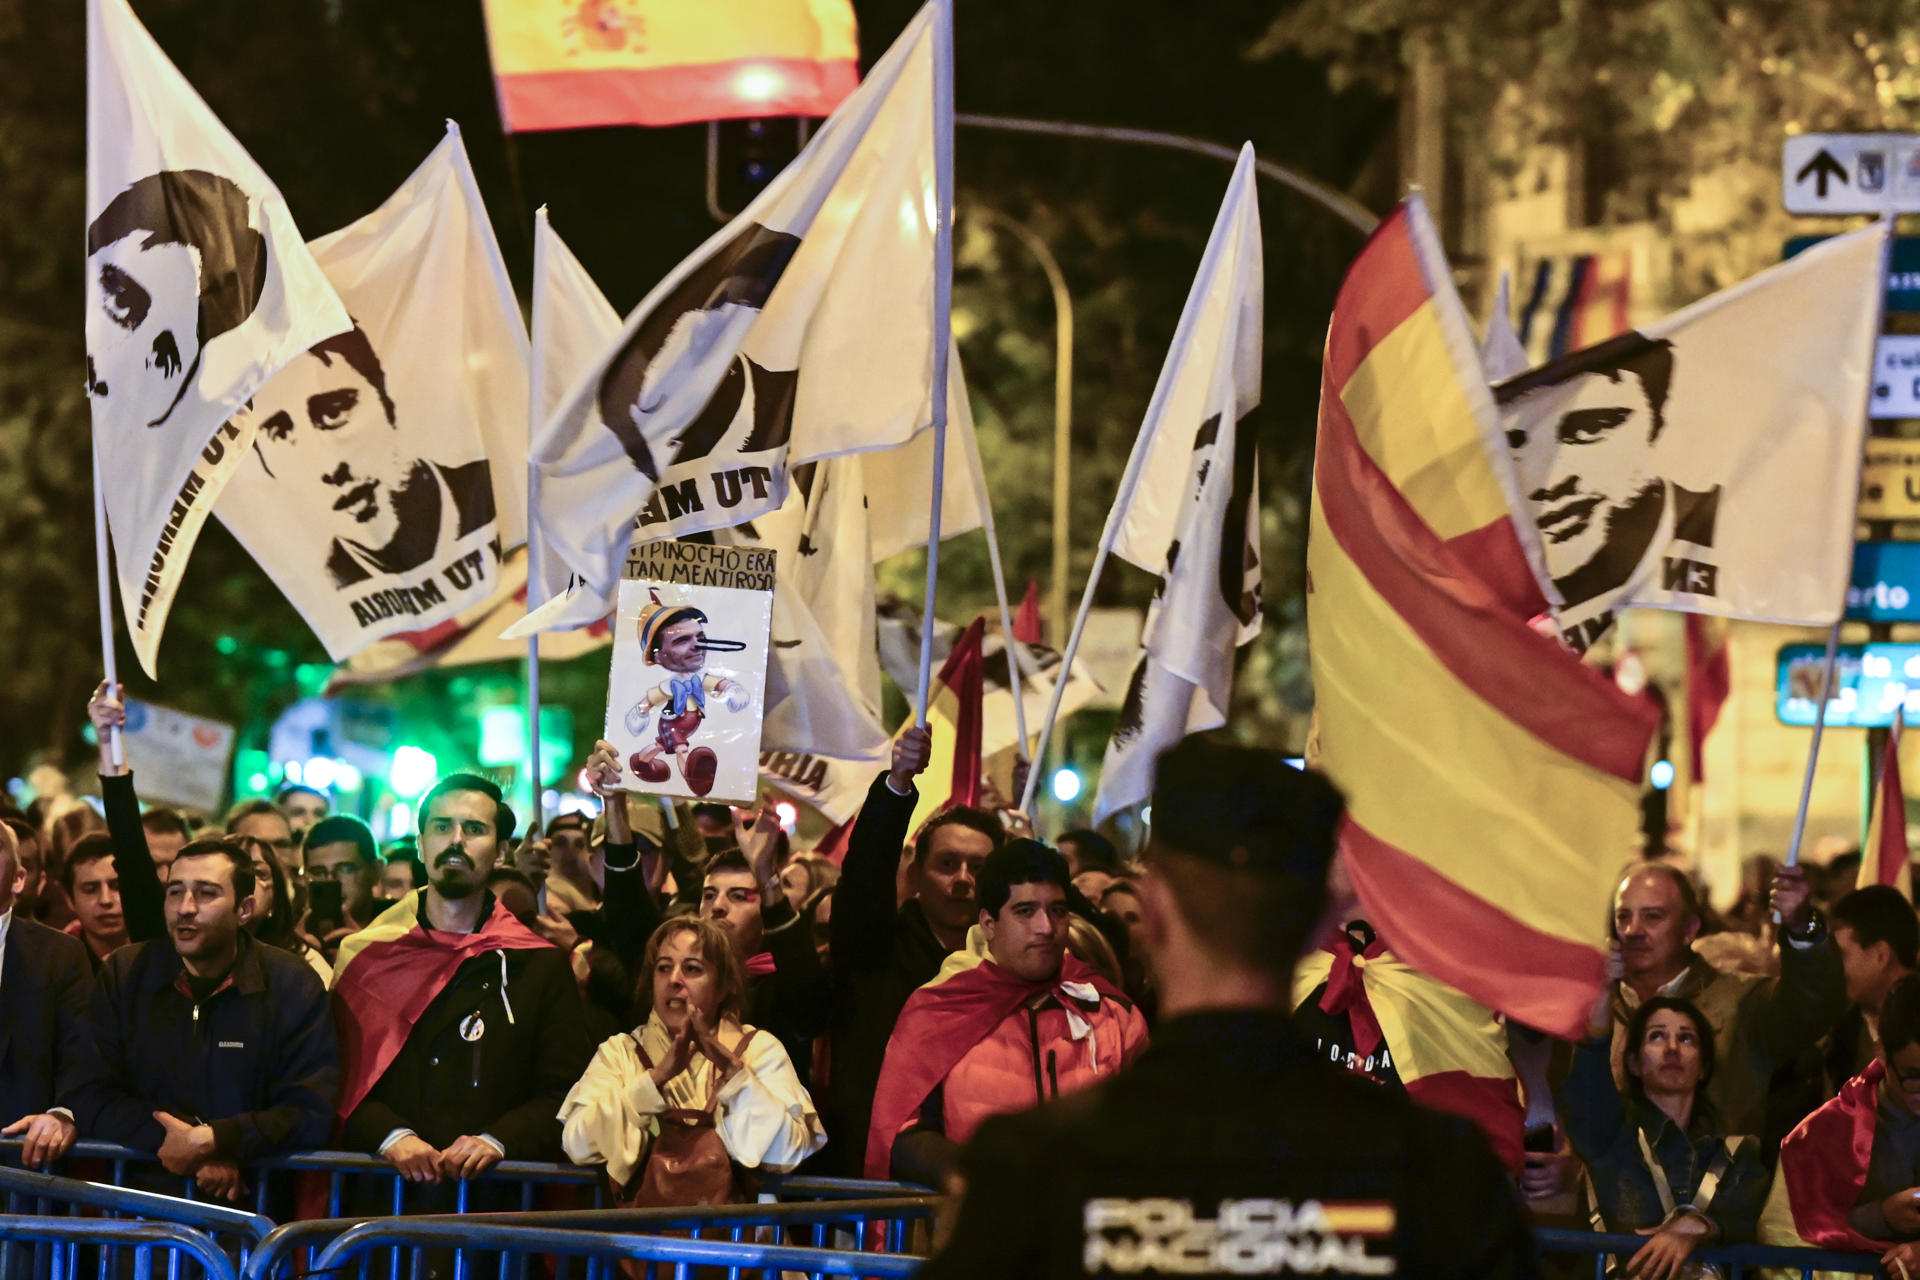 1.500 persones protesten contra l'amnistia a Madrid i avisen que va per llarg: "El raïm, a Ferraz"